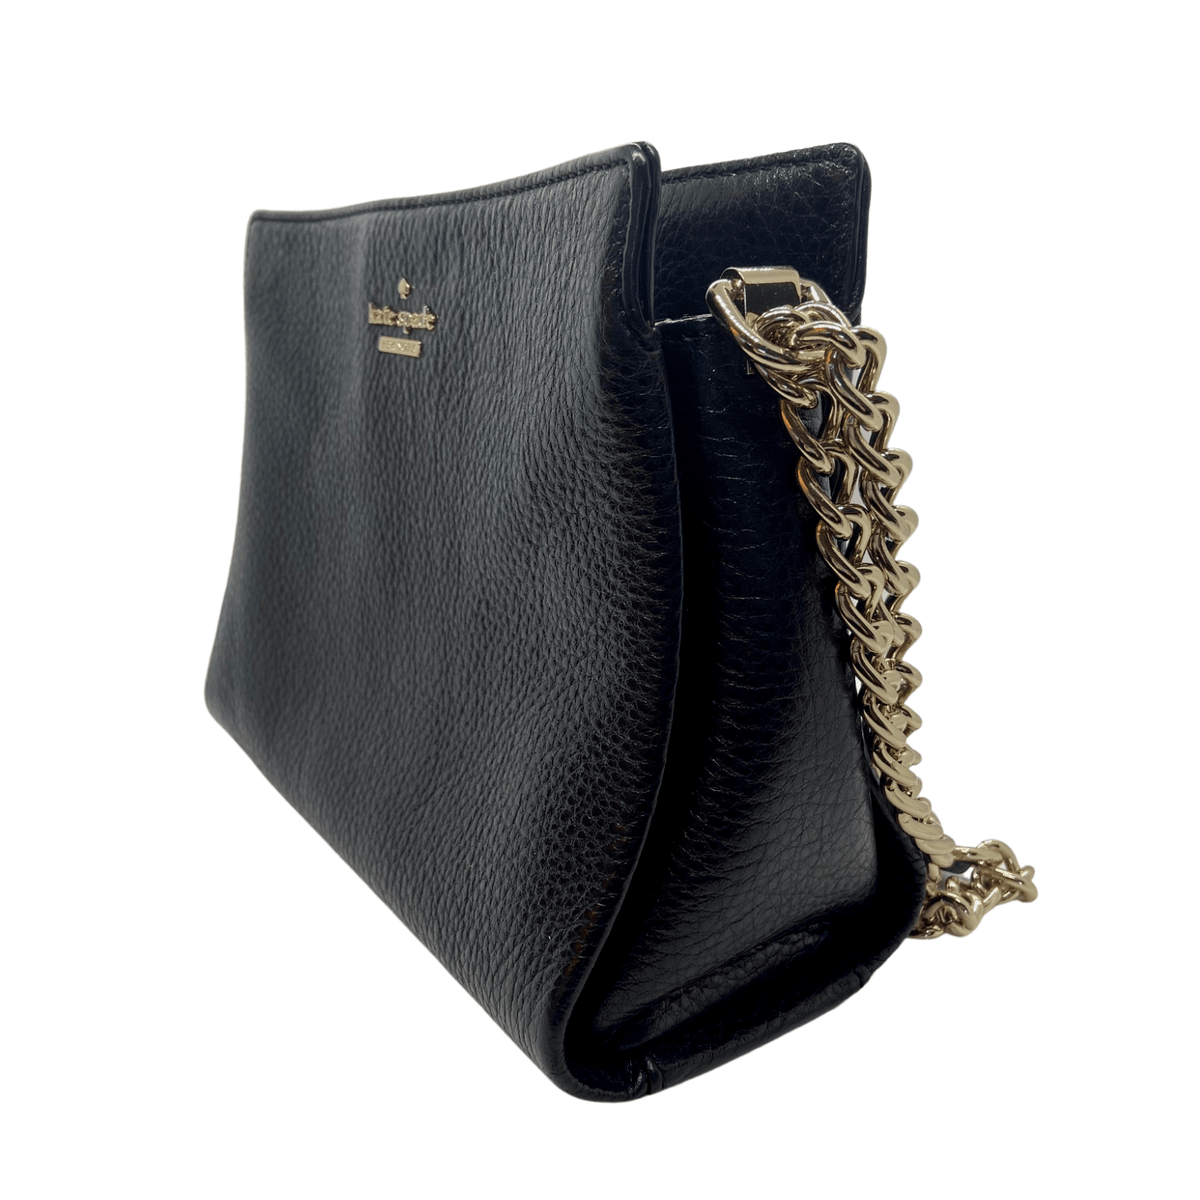 Kate Spade - Black Pebbled Leather Gold Chain Shoulder Bag